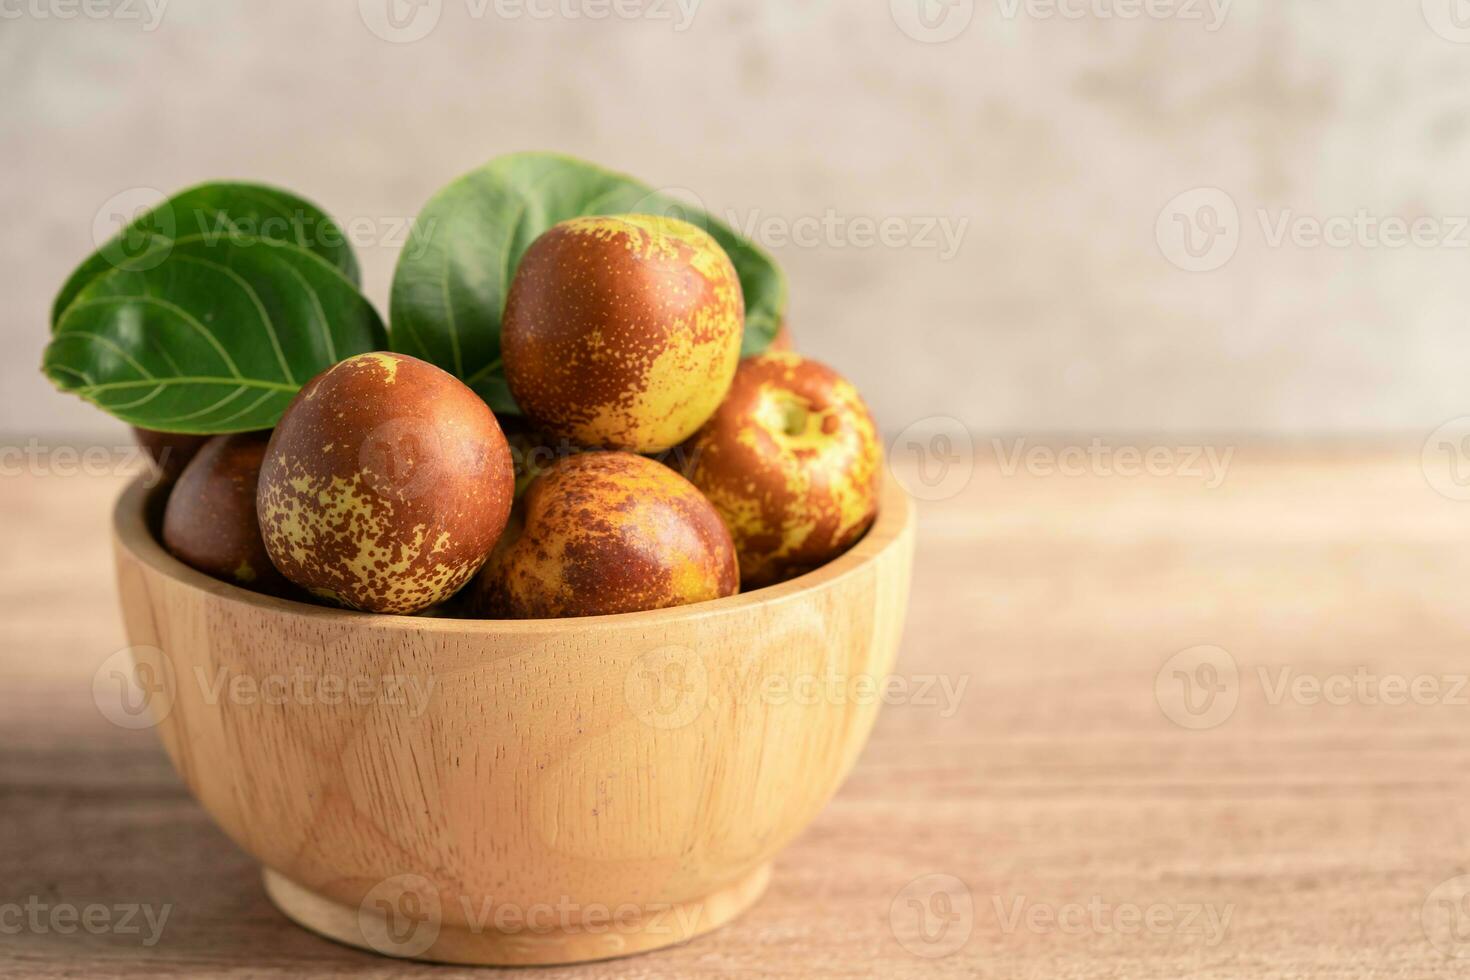 fruits de jujube ou dattes chinoises dans un bol en bois, nourriture saine. photo